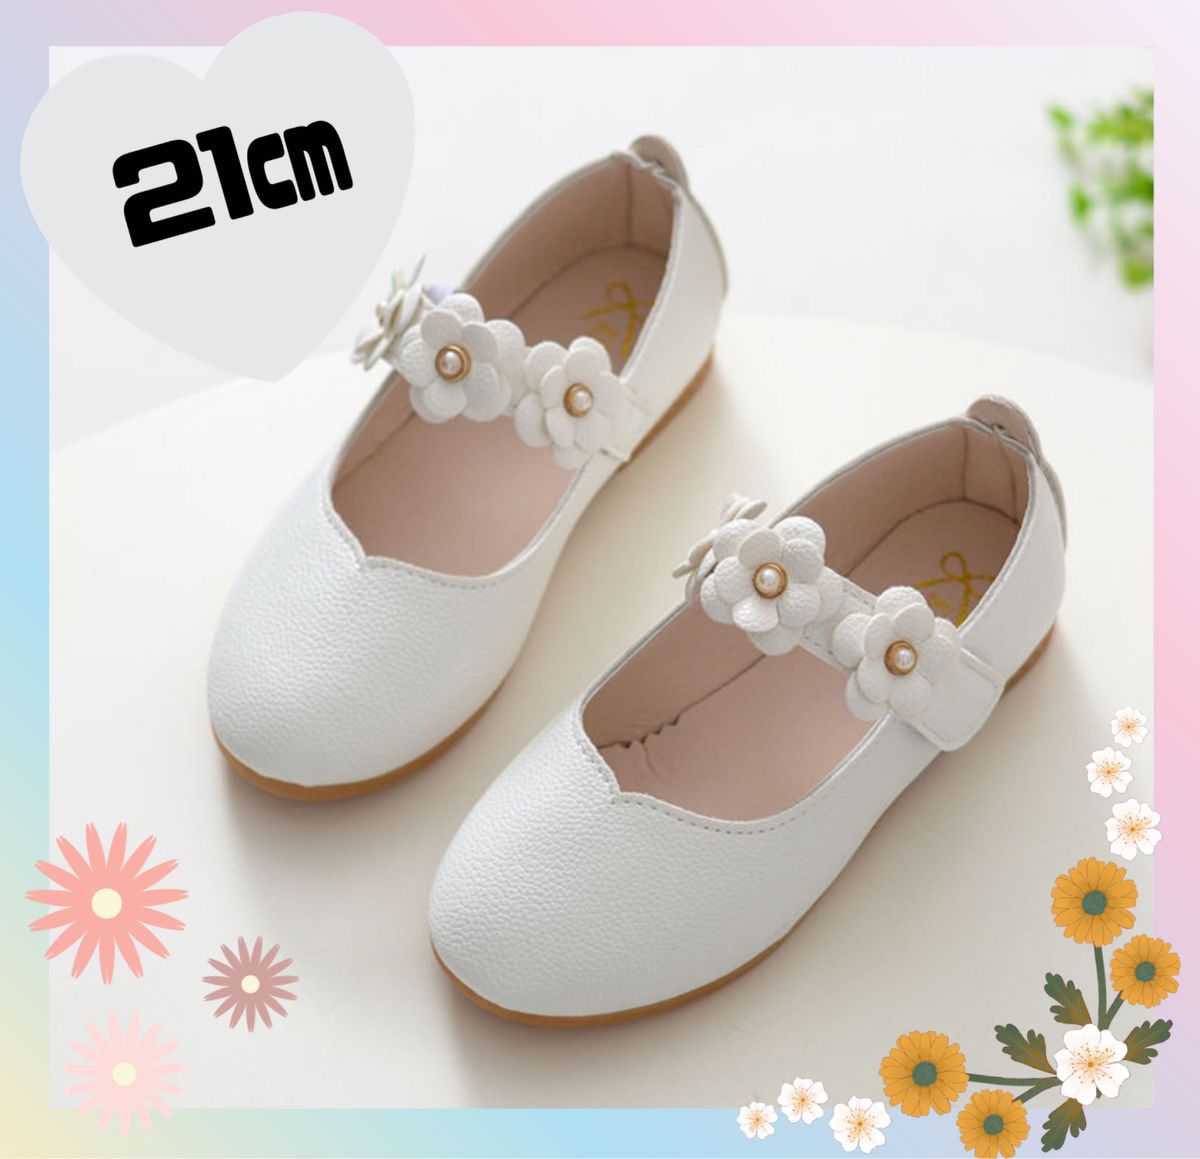 女の子 フォーマル 靴 21cm ホワイト 白 七五三 結婚式 入園式 入学式